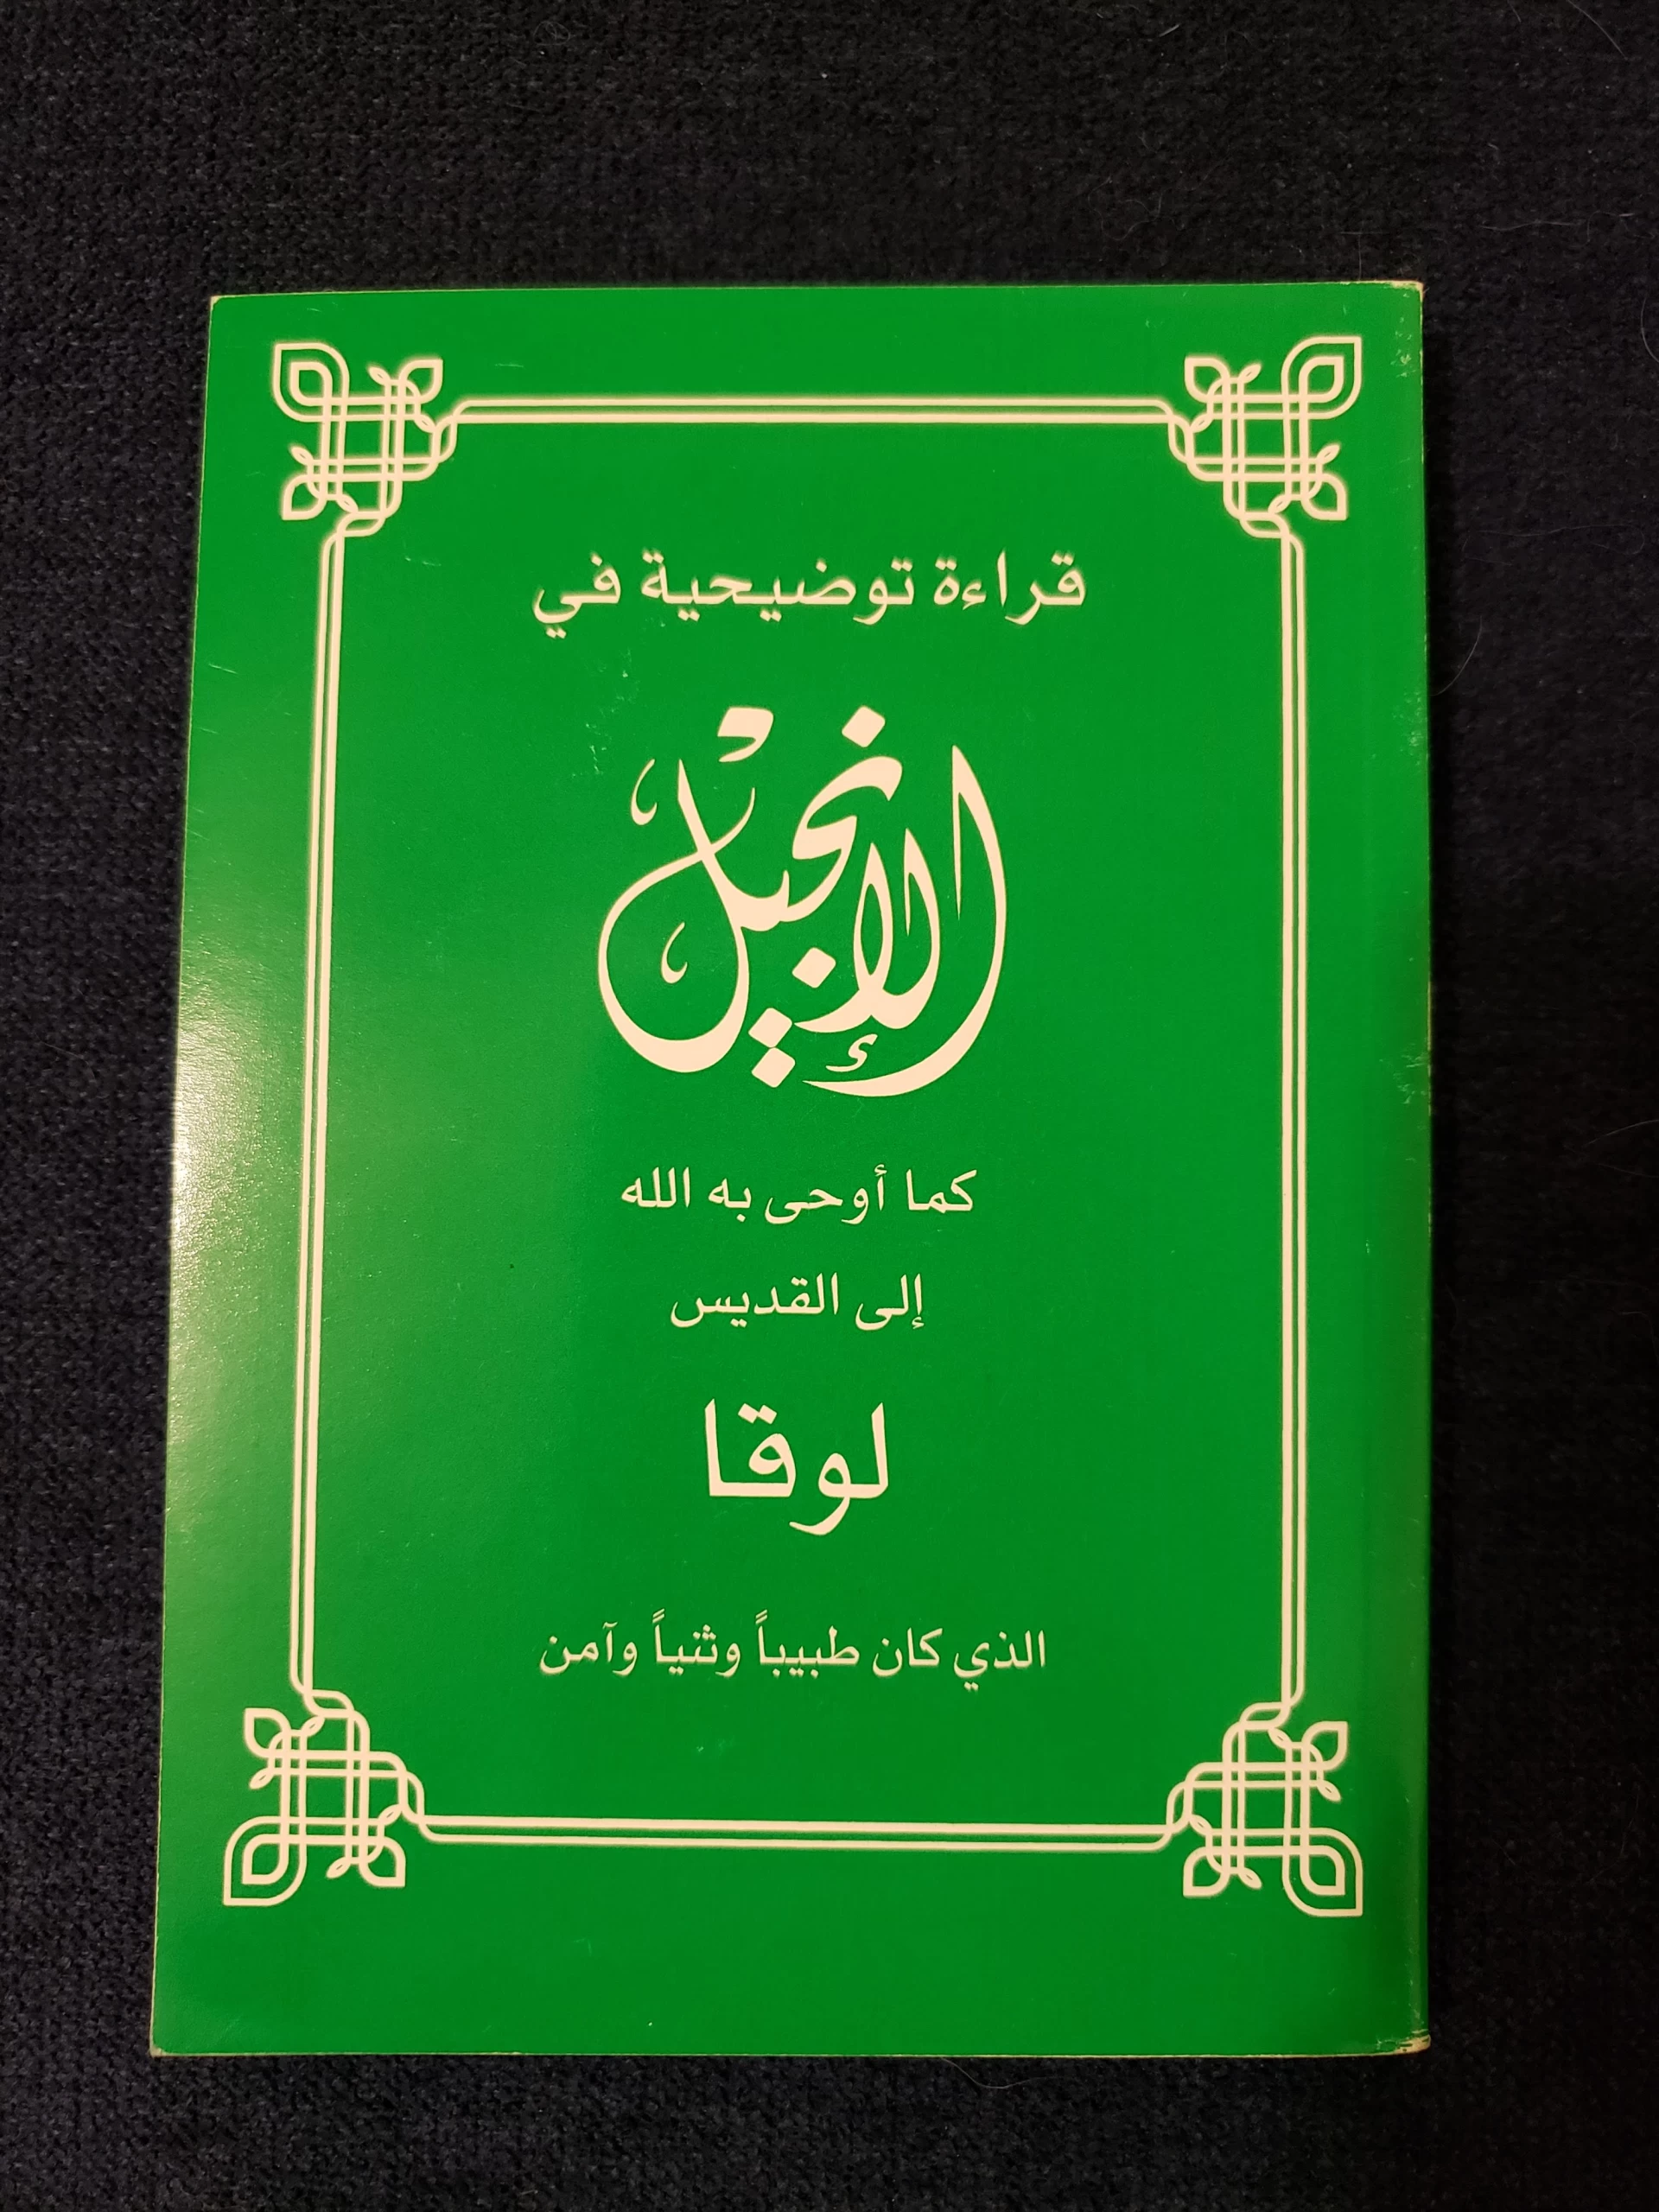 The Gospel of Luke (Arabic)